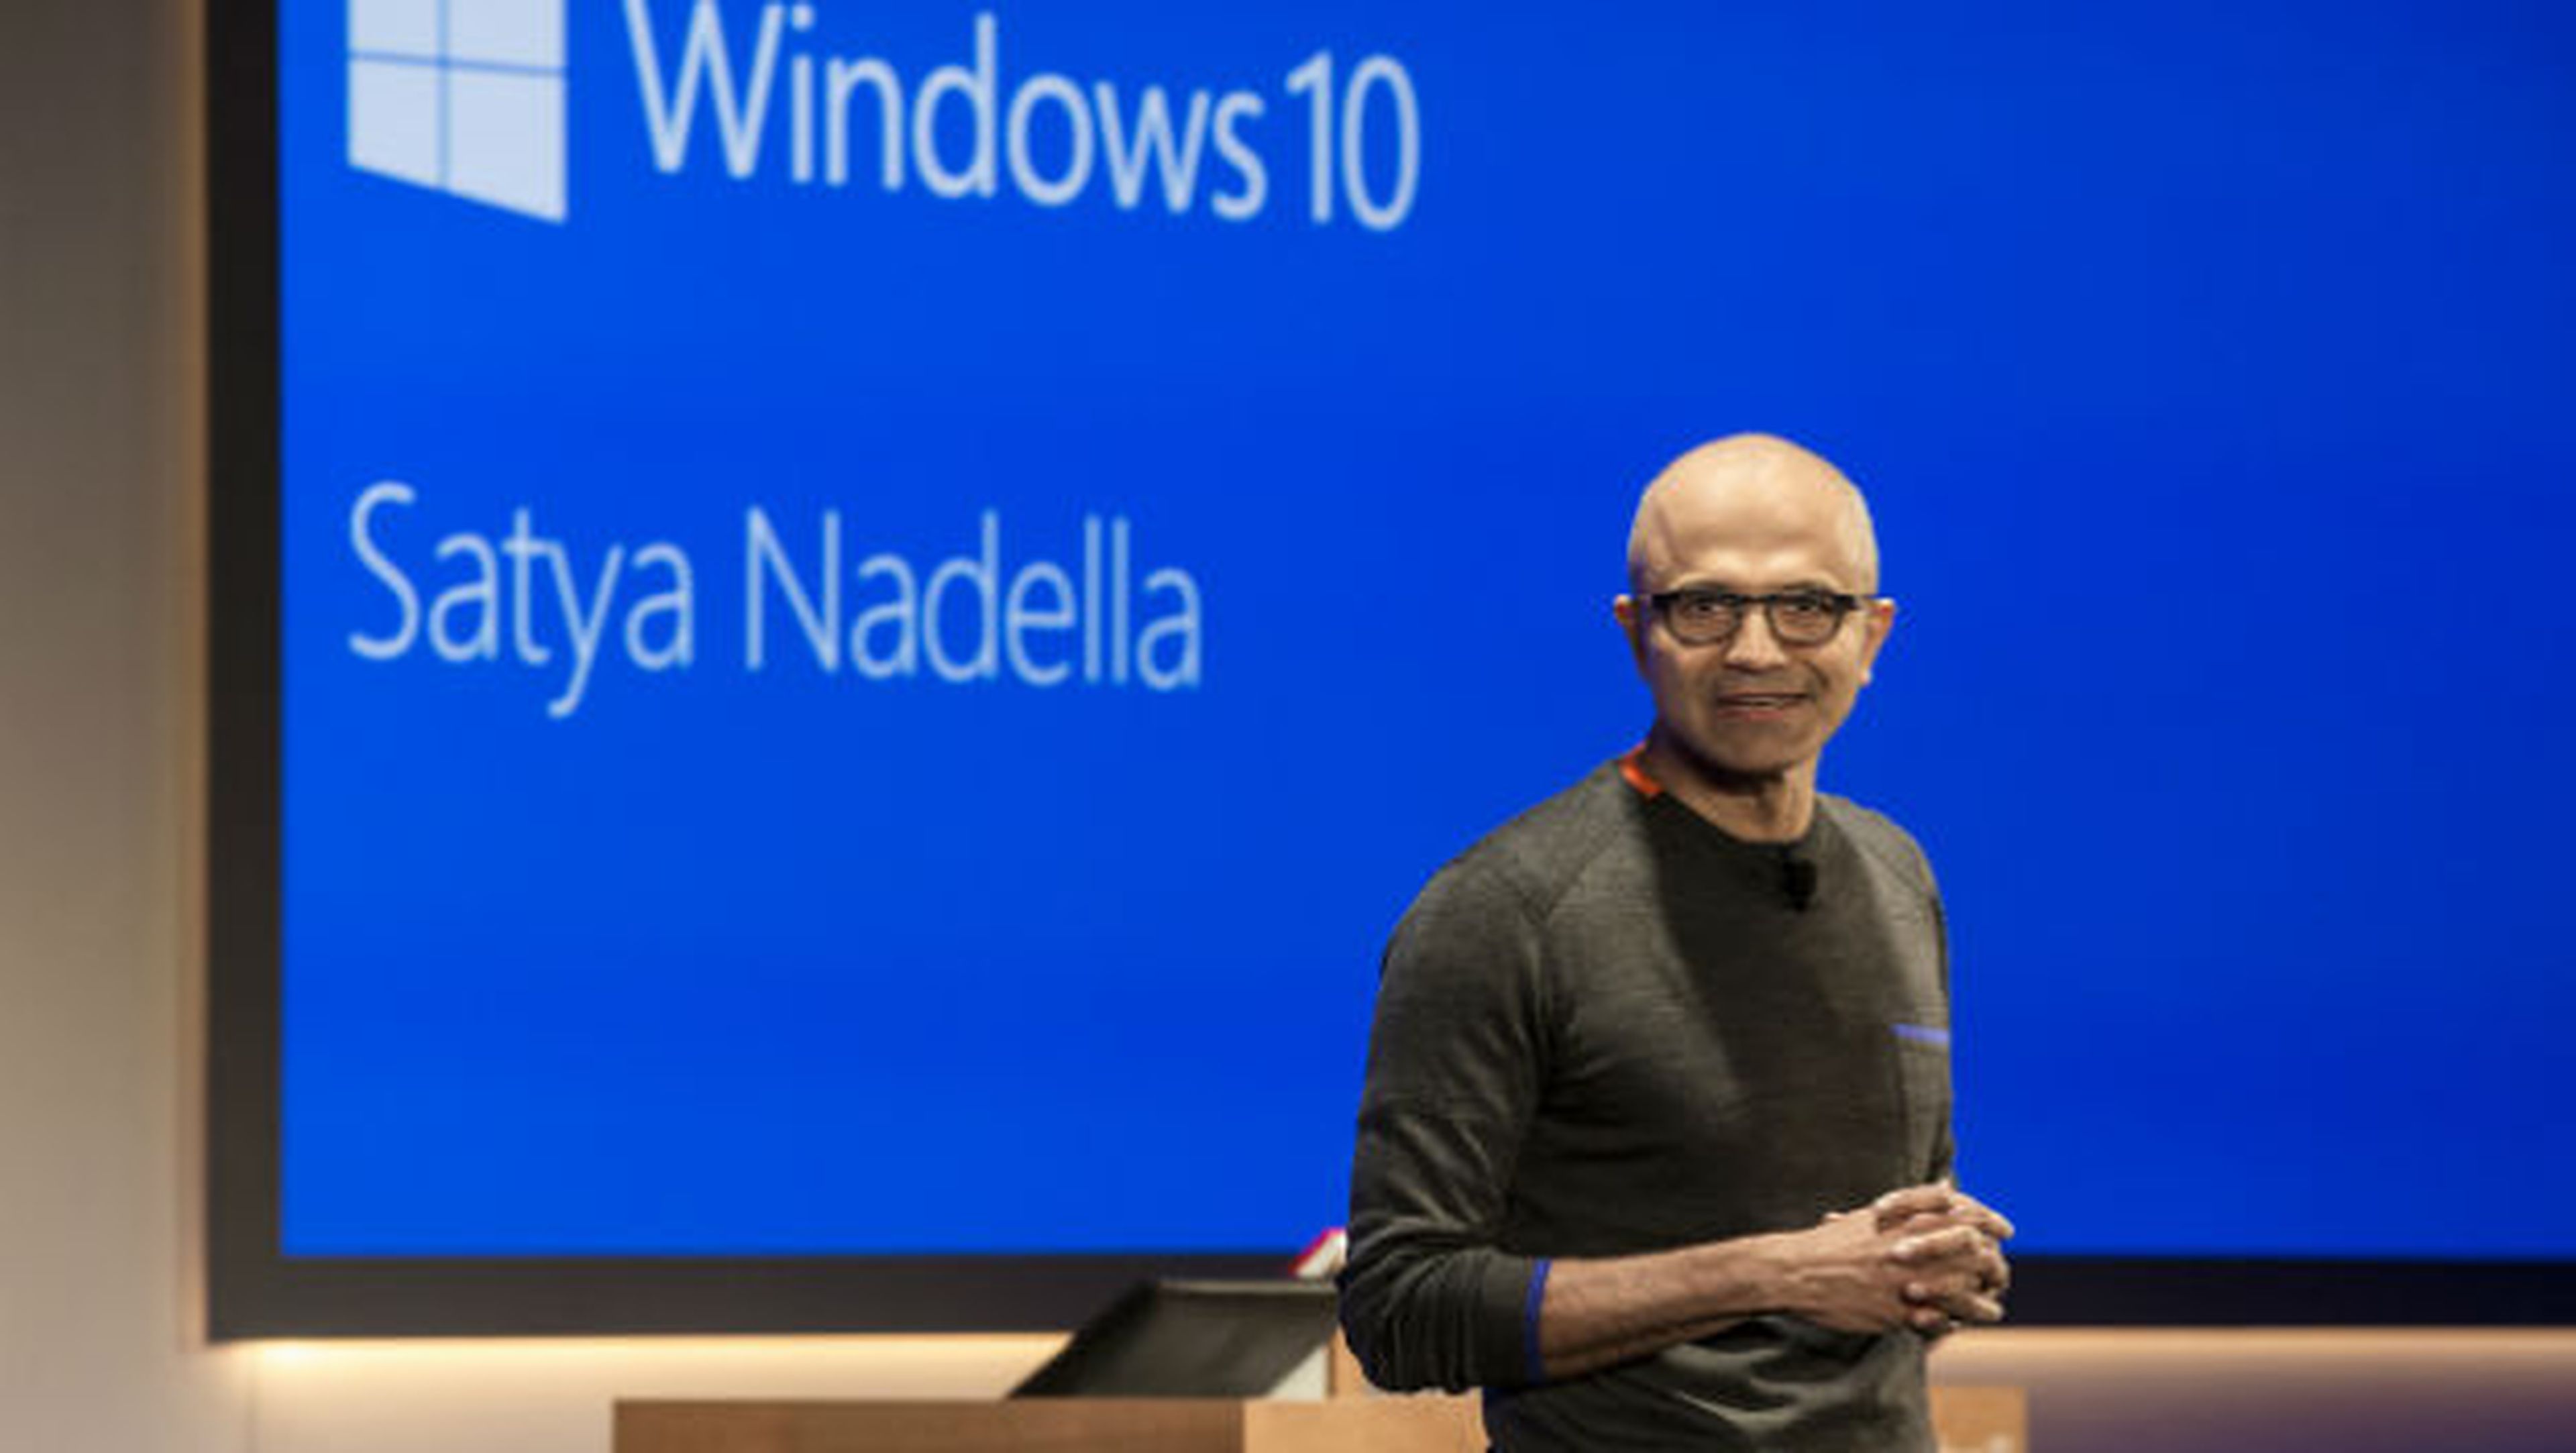 Los móviles no forman parte de la estrategia para el futuro de Microsoft, según su CEO Satya Nadella.